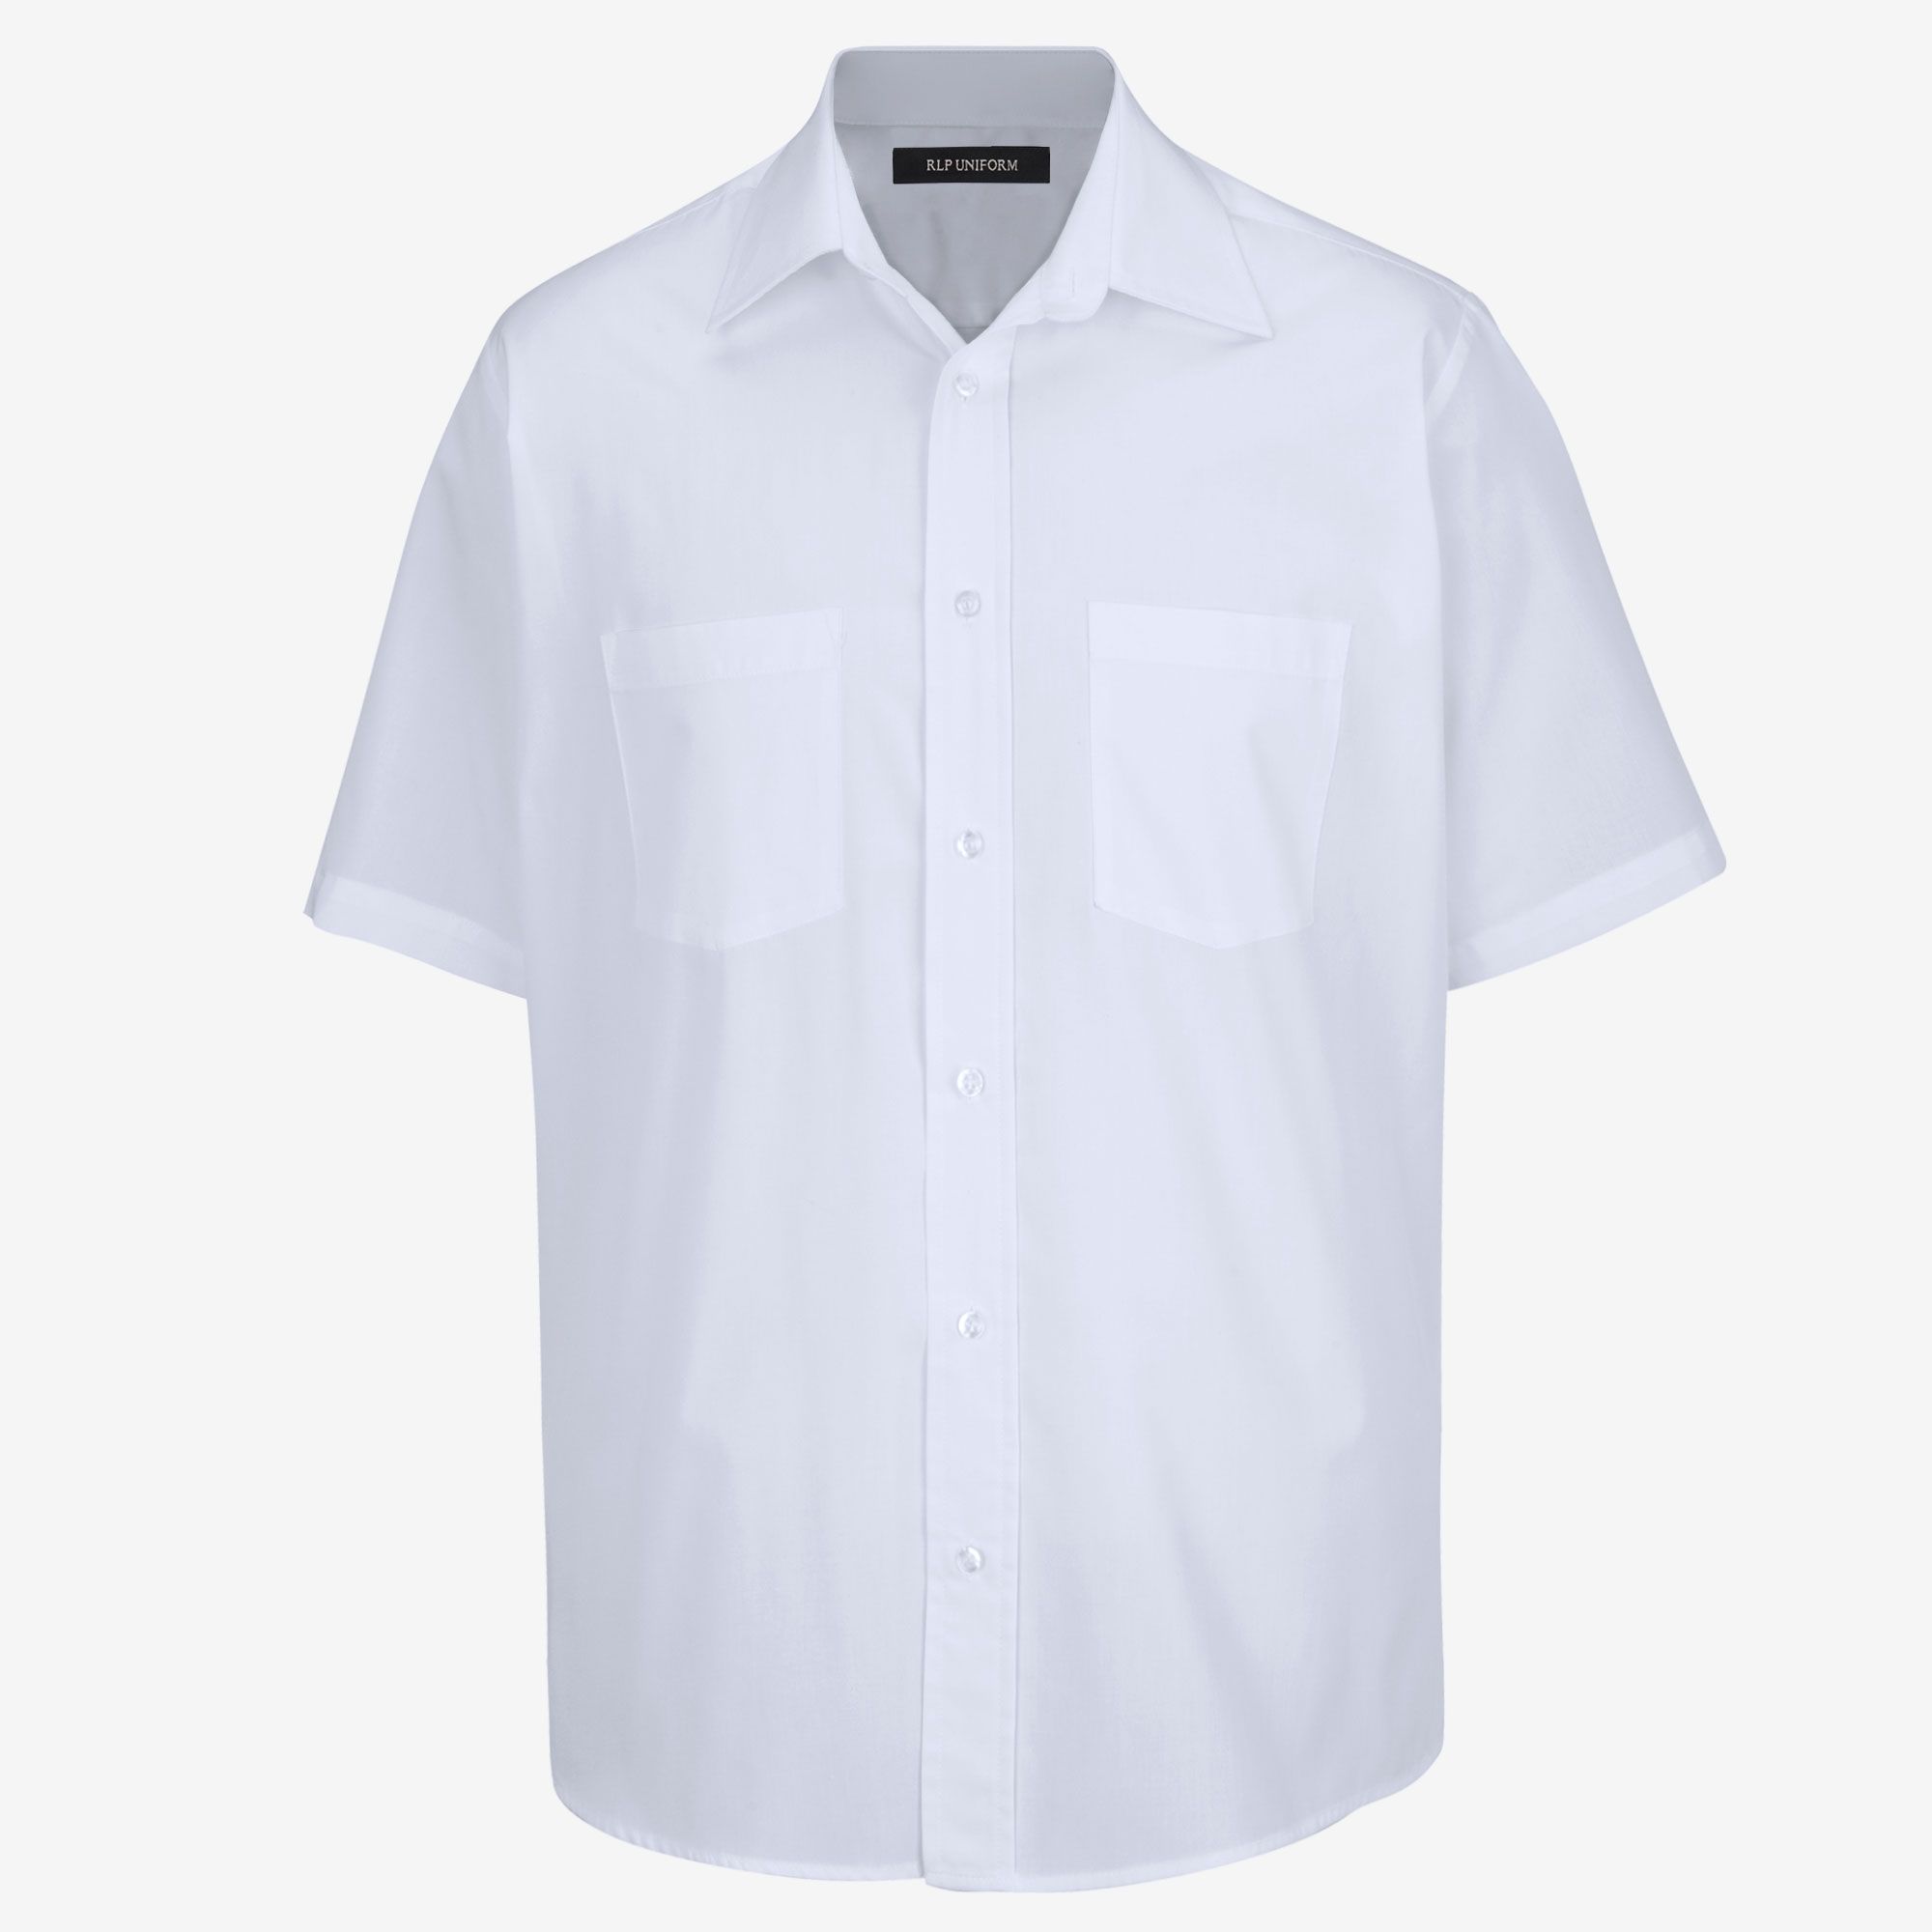 Work Uniform Polo Shirt - Short Sleeve - Jay - Black - Size XL - A